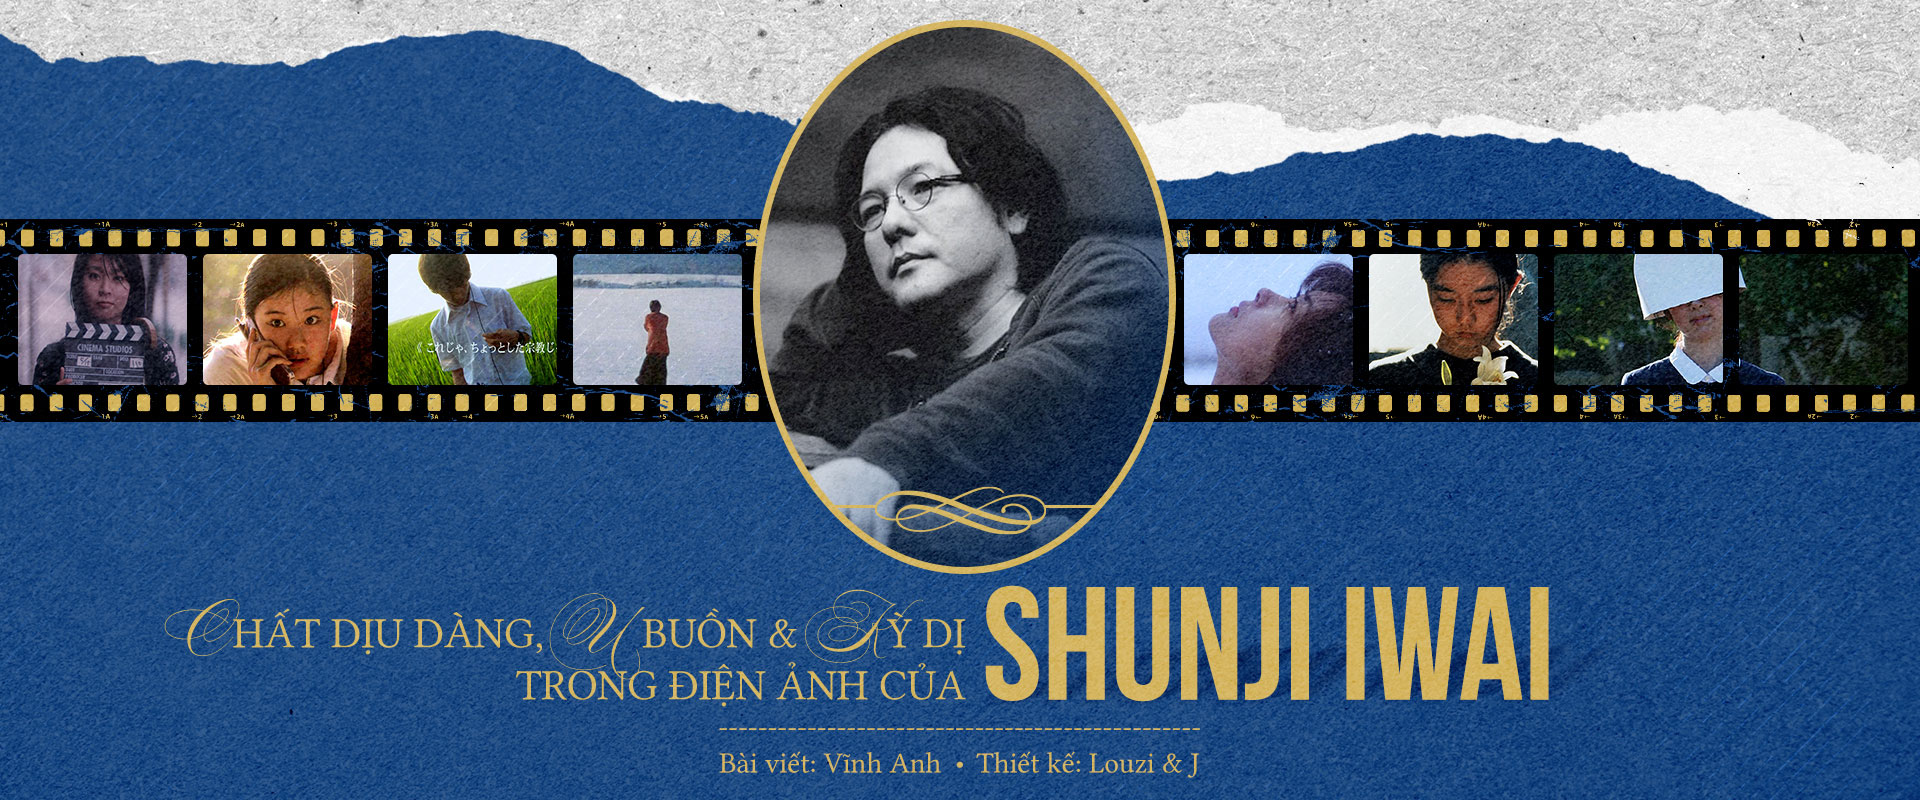 Chất dịu dàng, u buồn và kỳ dị trong điện ảnh của Shunji Iwai